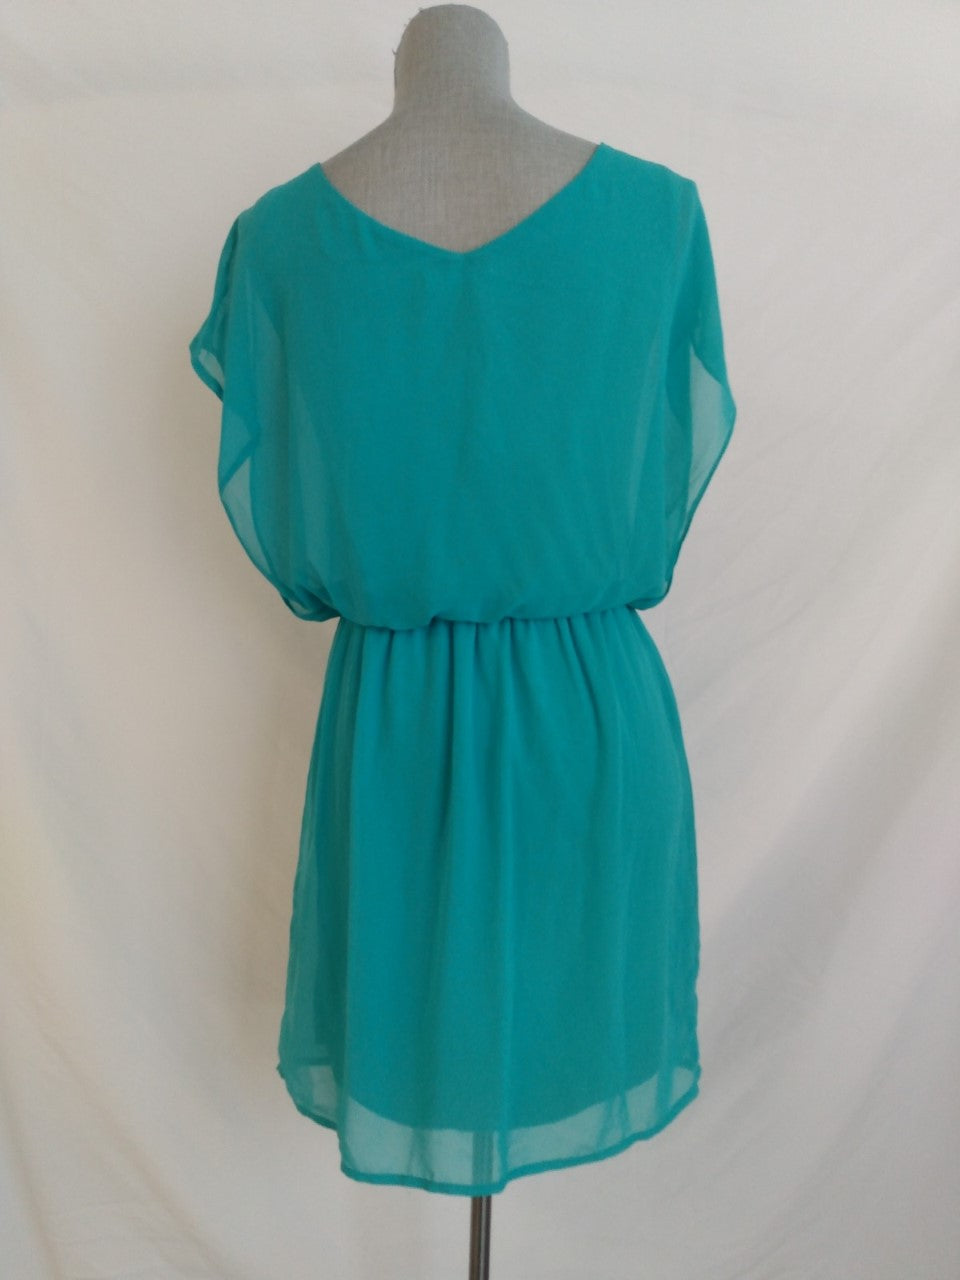 NWT - LUSH turquoise Lush Sleeveless Dress - M